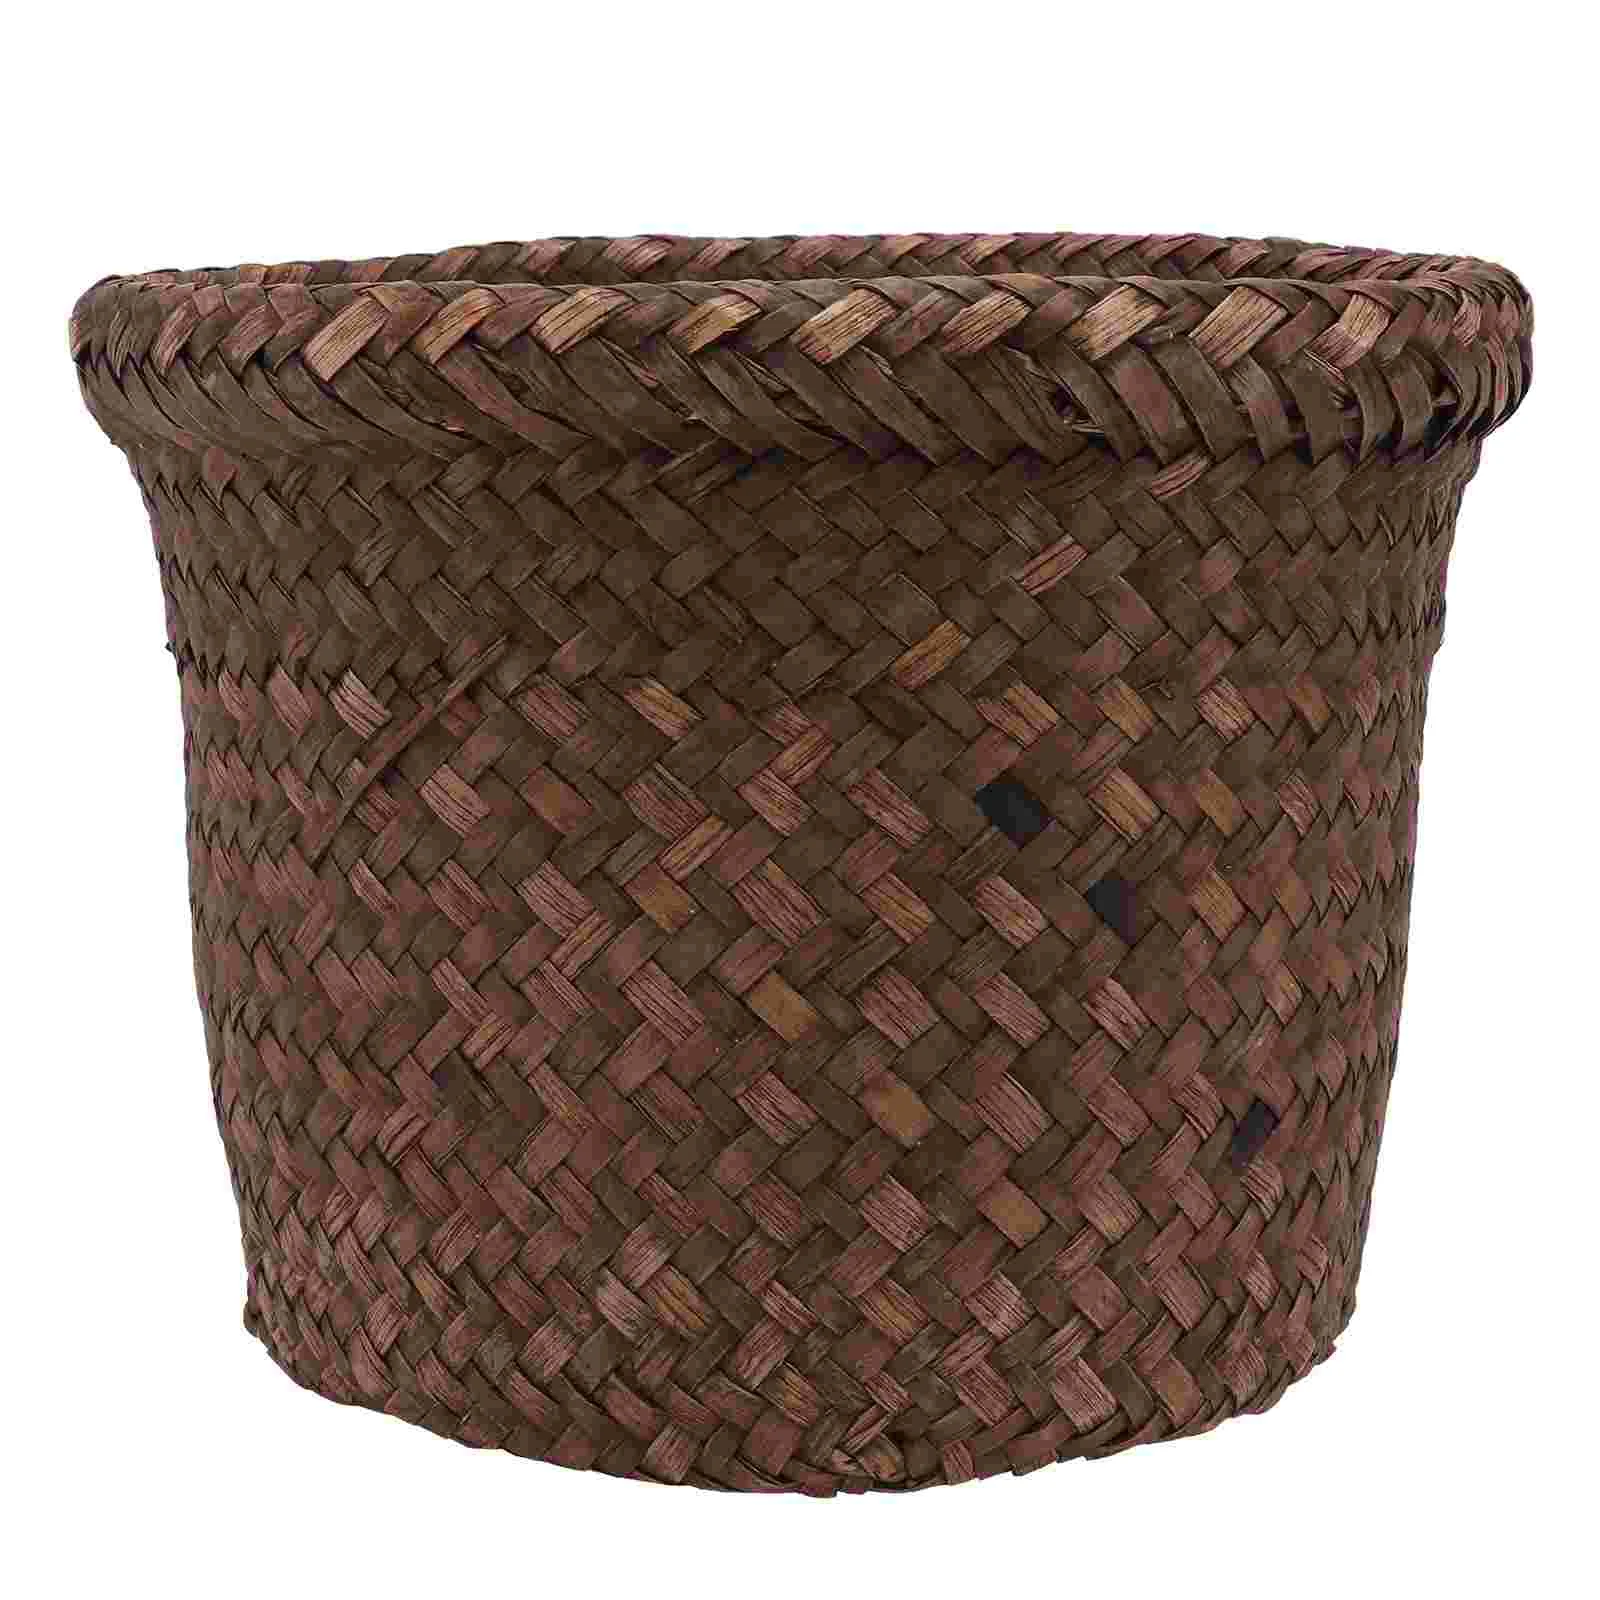 

Seagrass Planter Basket Woven Flower Basket Weaving Basket Flower Pots Garden Container Wicker Rattan Vase Storage Bin Box